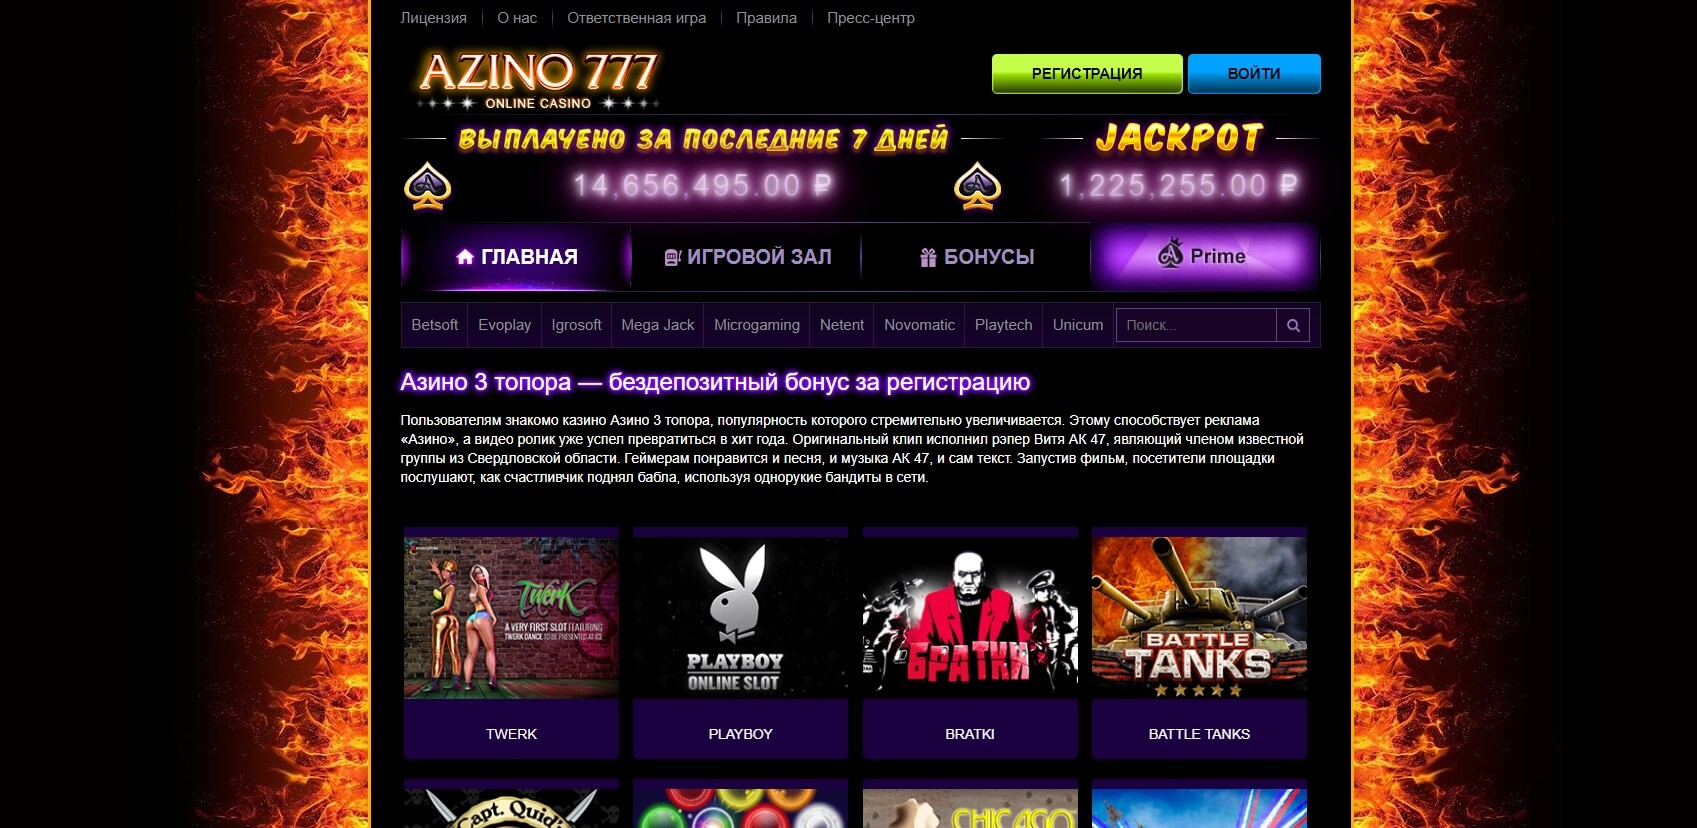 Оригинальный сайт azino777 казино с выплатами выигрышей kazino reiting2 com